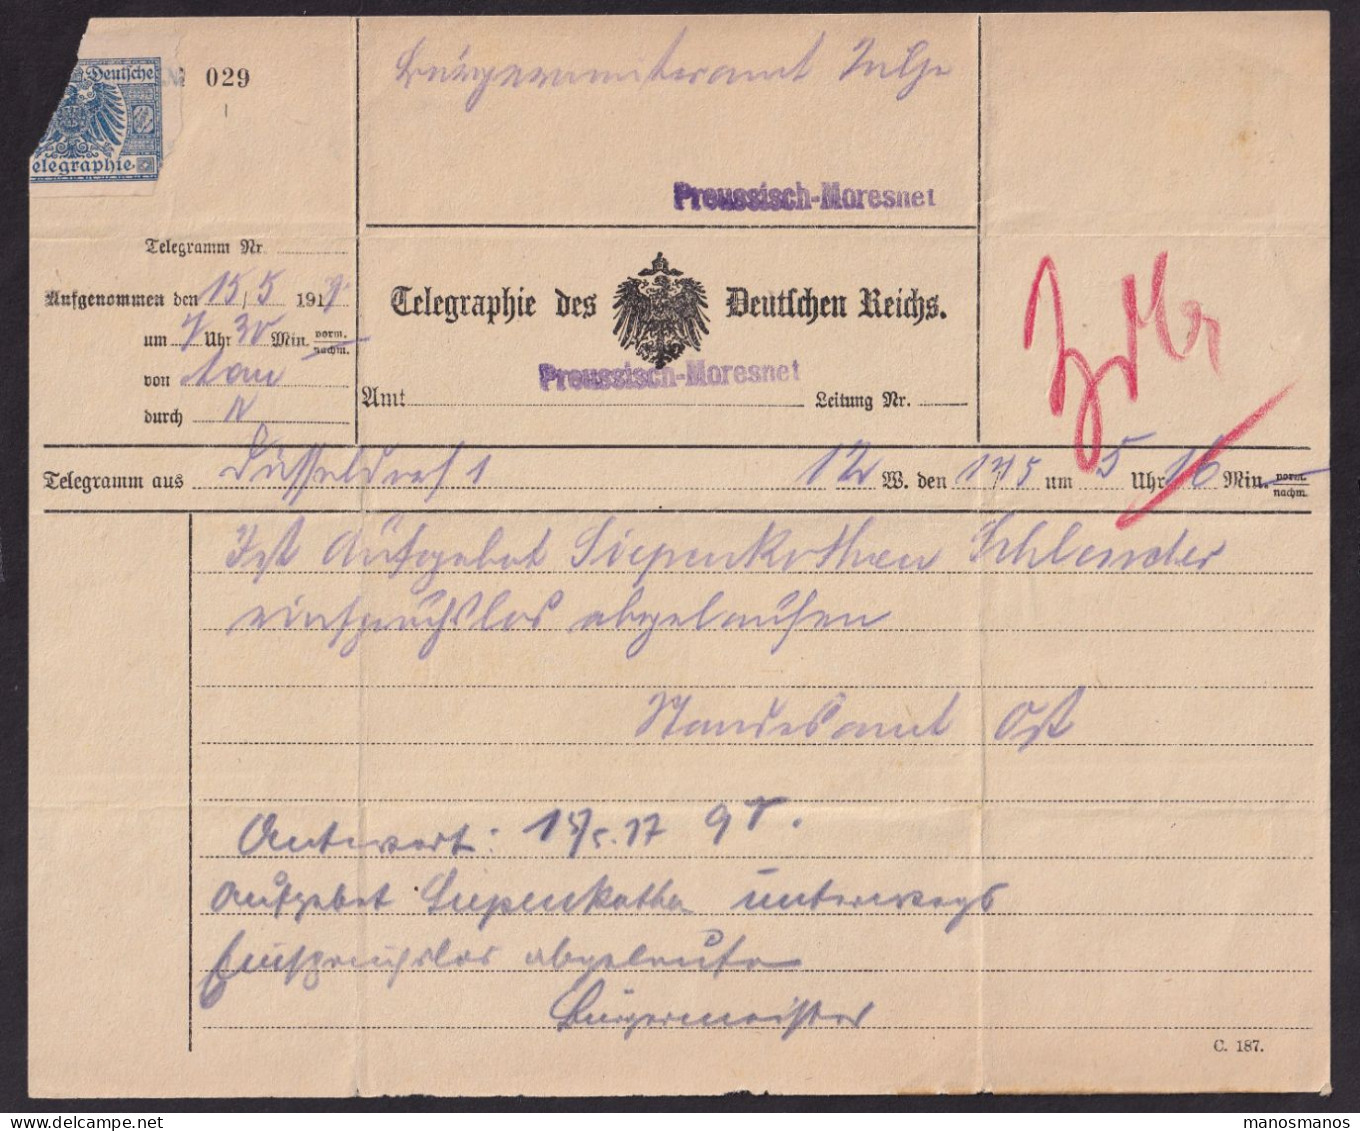 186/39 - CANTONS DE L'EST - Télégramme Deutsches Reich 1917, Vers PREUSSISCH MORESNET - RARE Griffe Violette - Telegrams